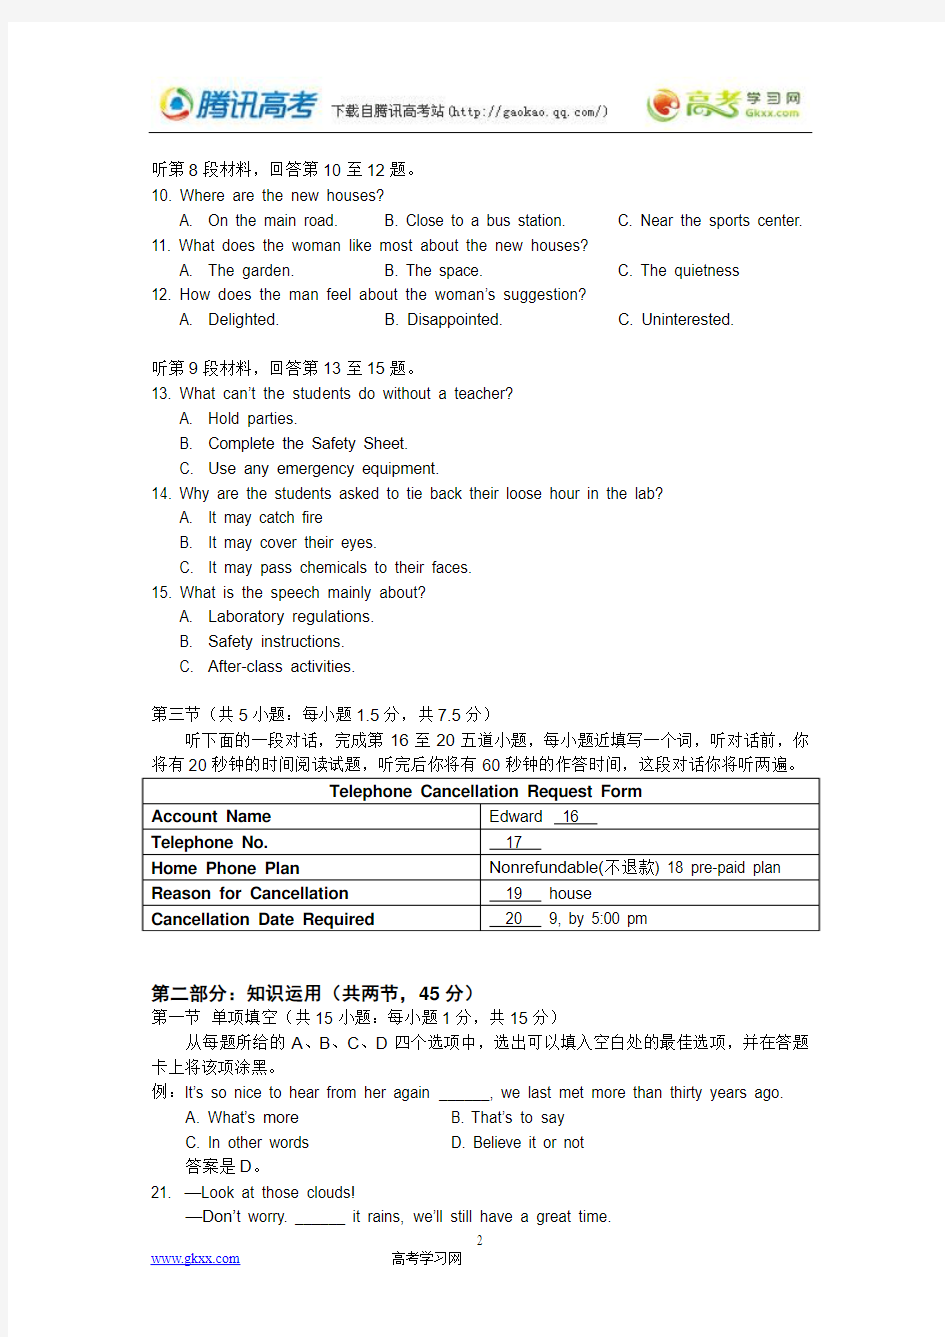 2012年北京高考英语试题